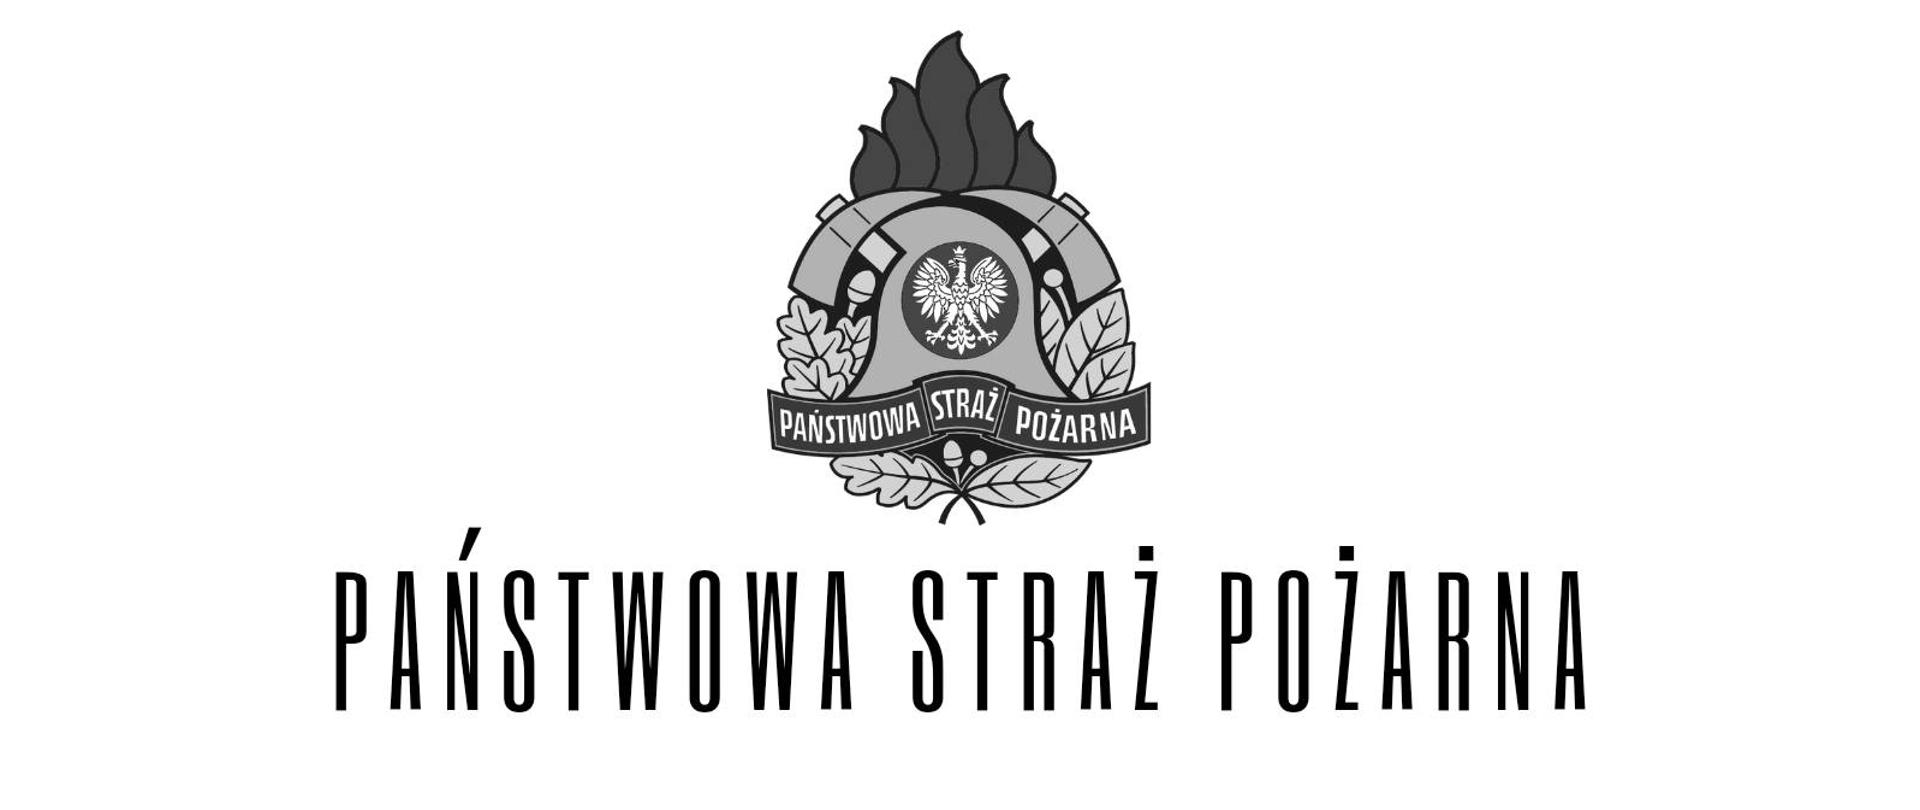 Biało czarny baner z logo i napisem Państwowa Straż Pożarna 